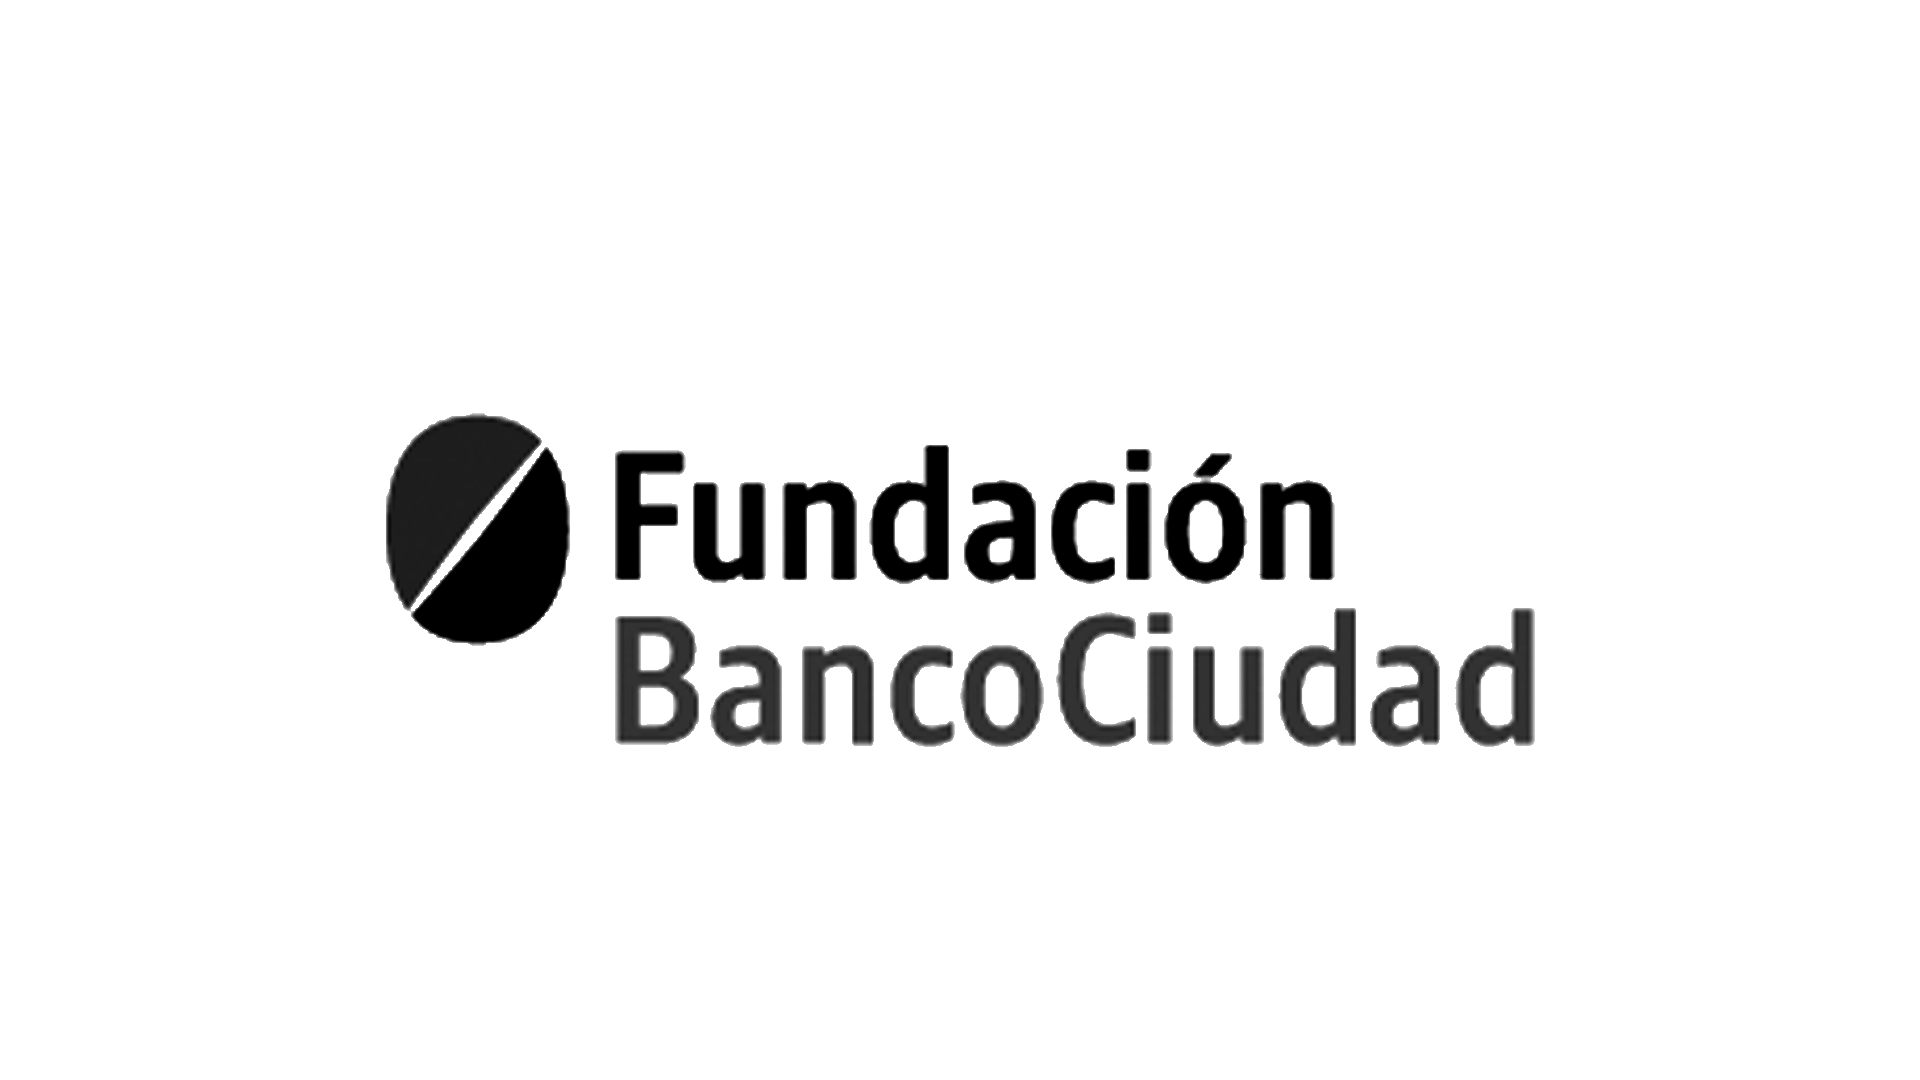 Fund Banco Ciudad